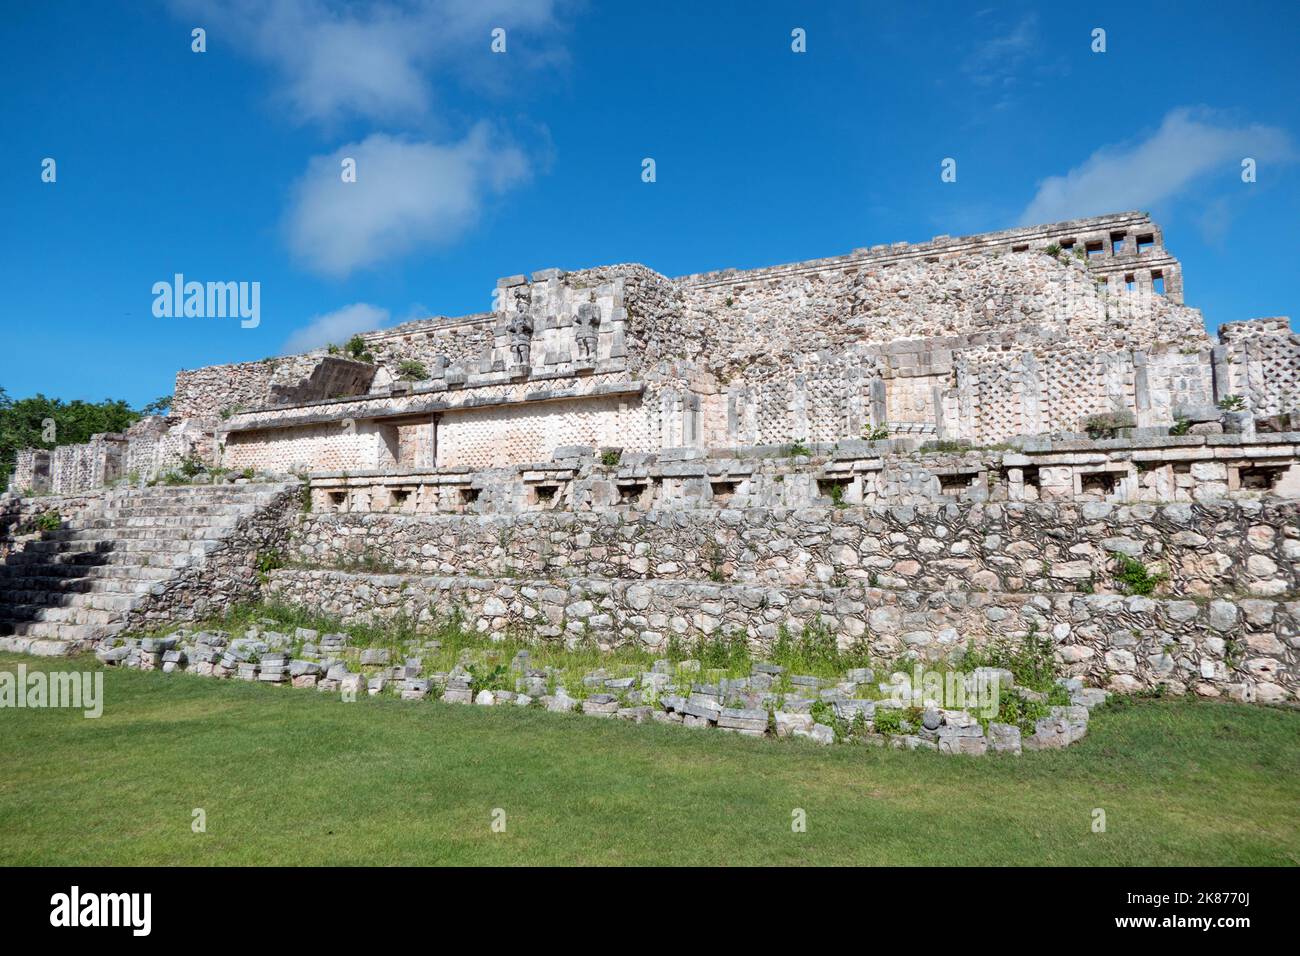 Palace of the Masks or Codz Poop palace at the Maya site of Kabah, Yucatan, Mexico Stock Photo